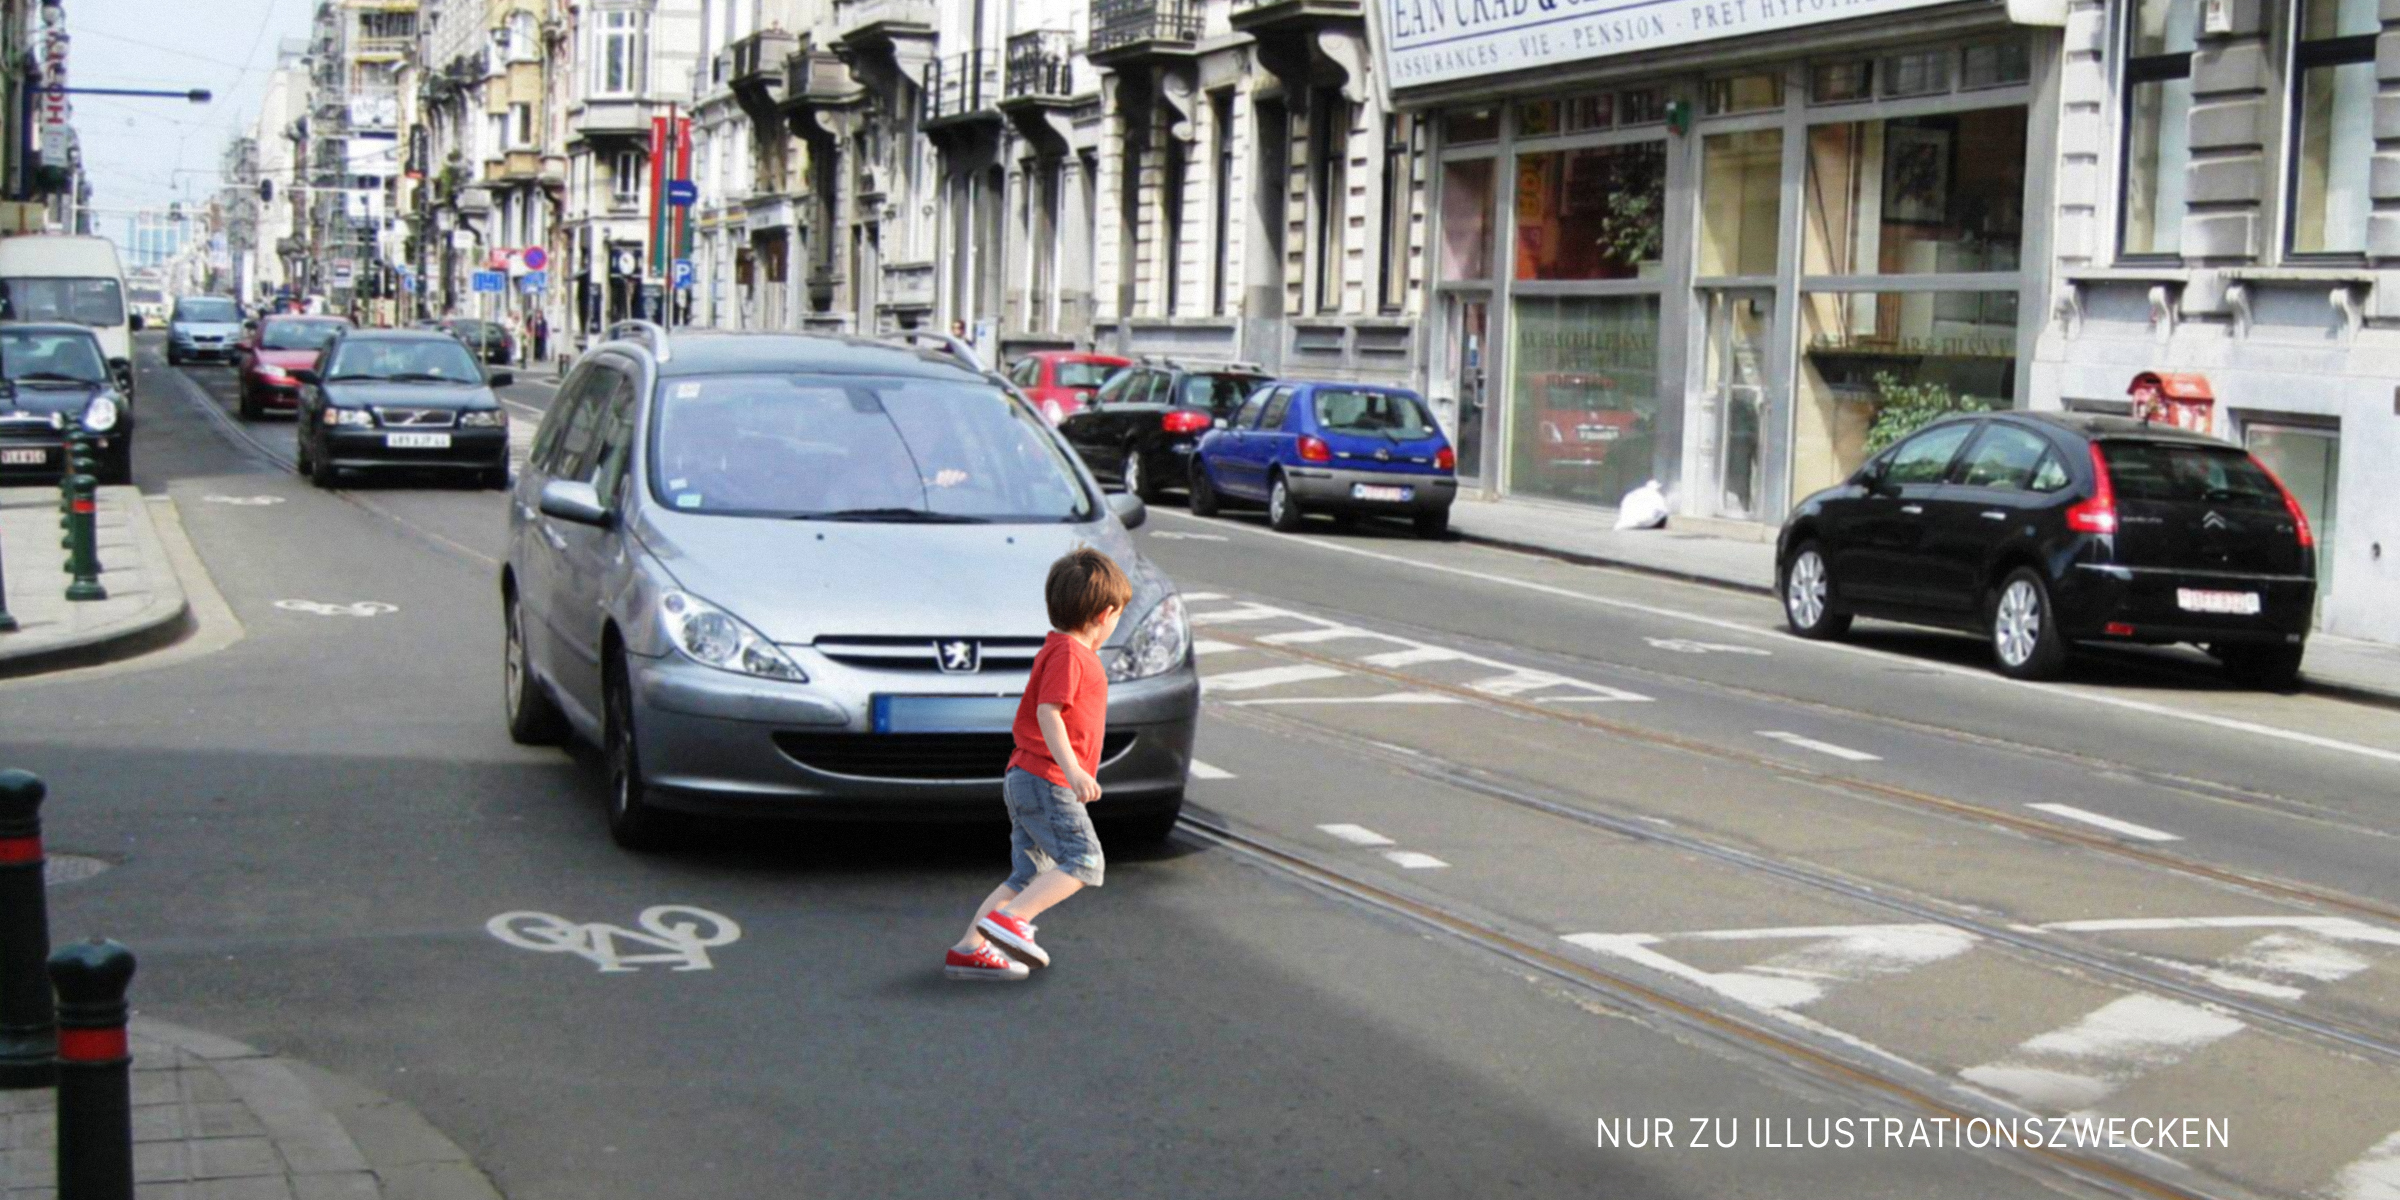 Junge vor einem Auto auf der Straße | Quelle: Shutterstock, Flickr / andynash (CC BY-SA 2.0)